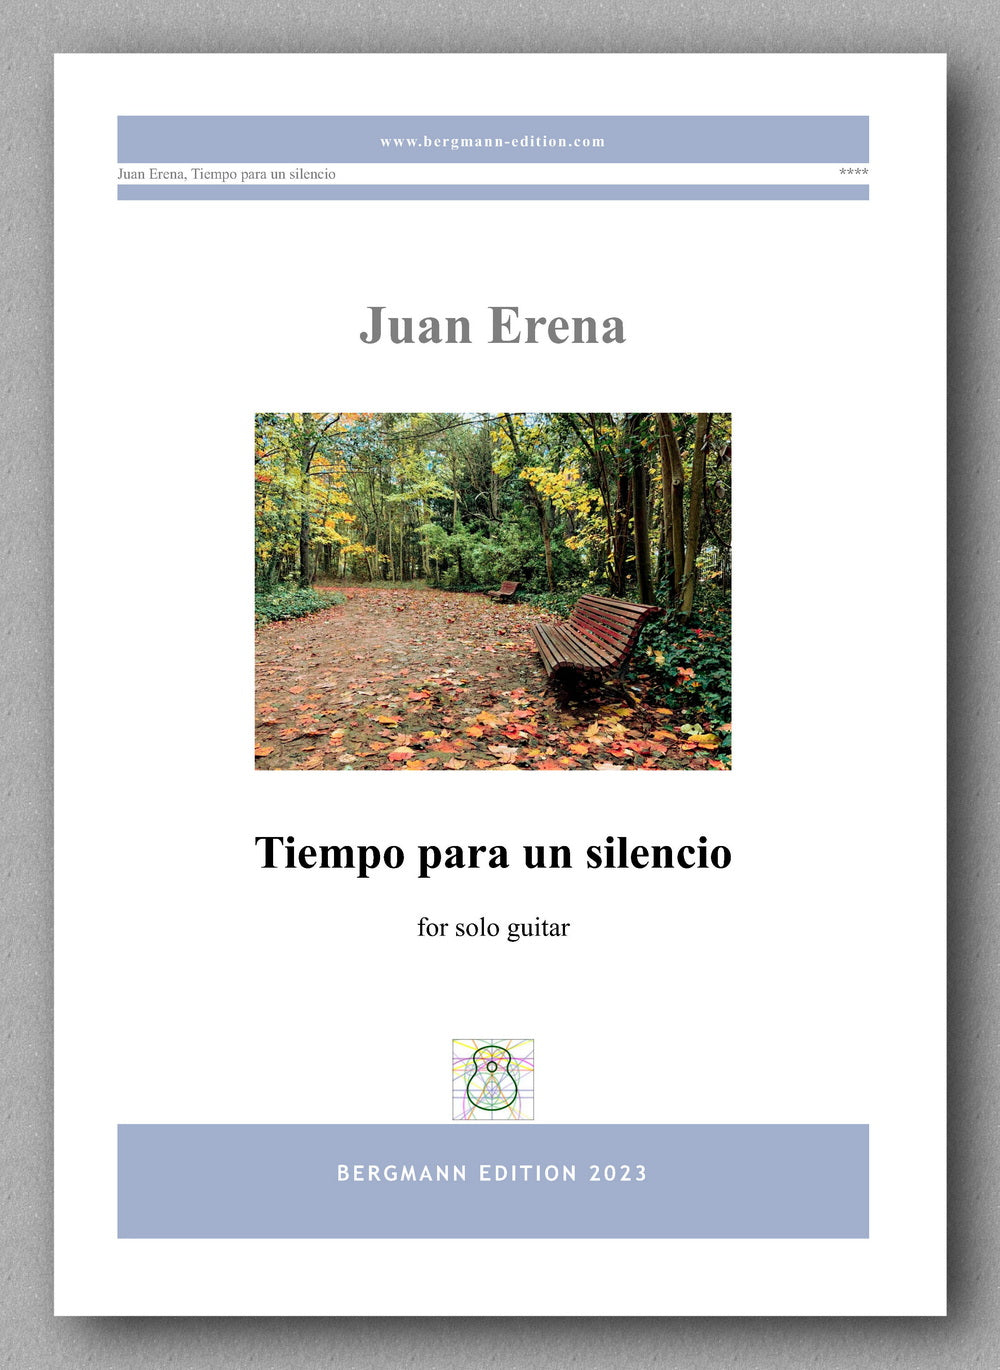 Juan Erena, Tiempo para un silencio - preview of the cover